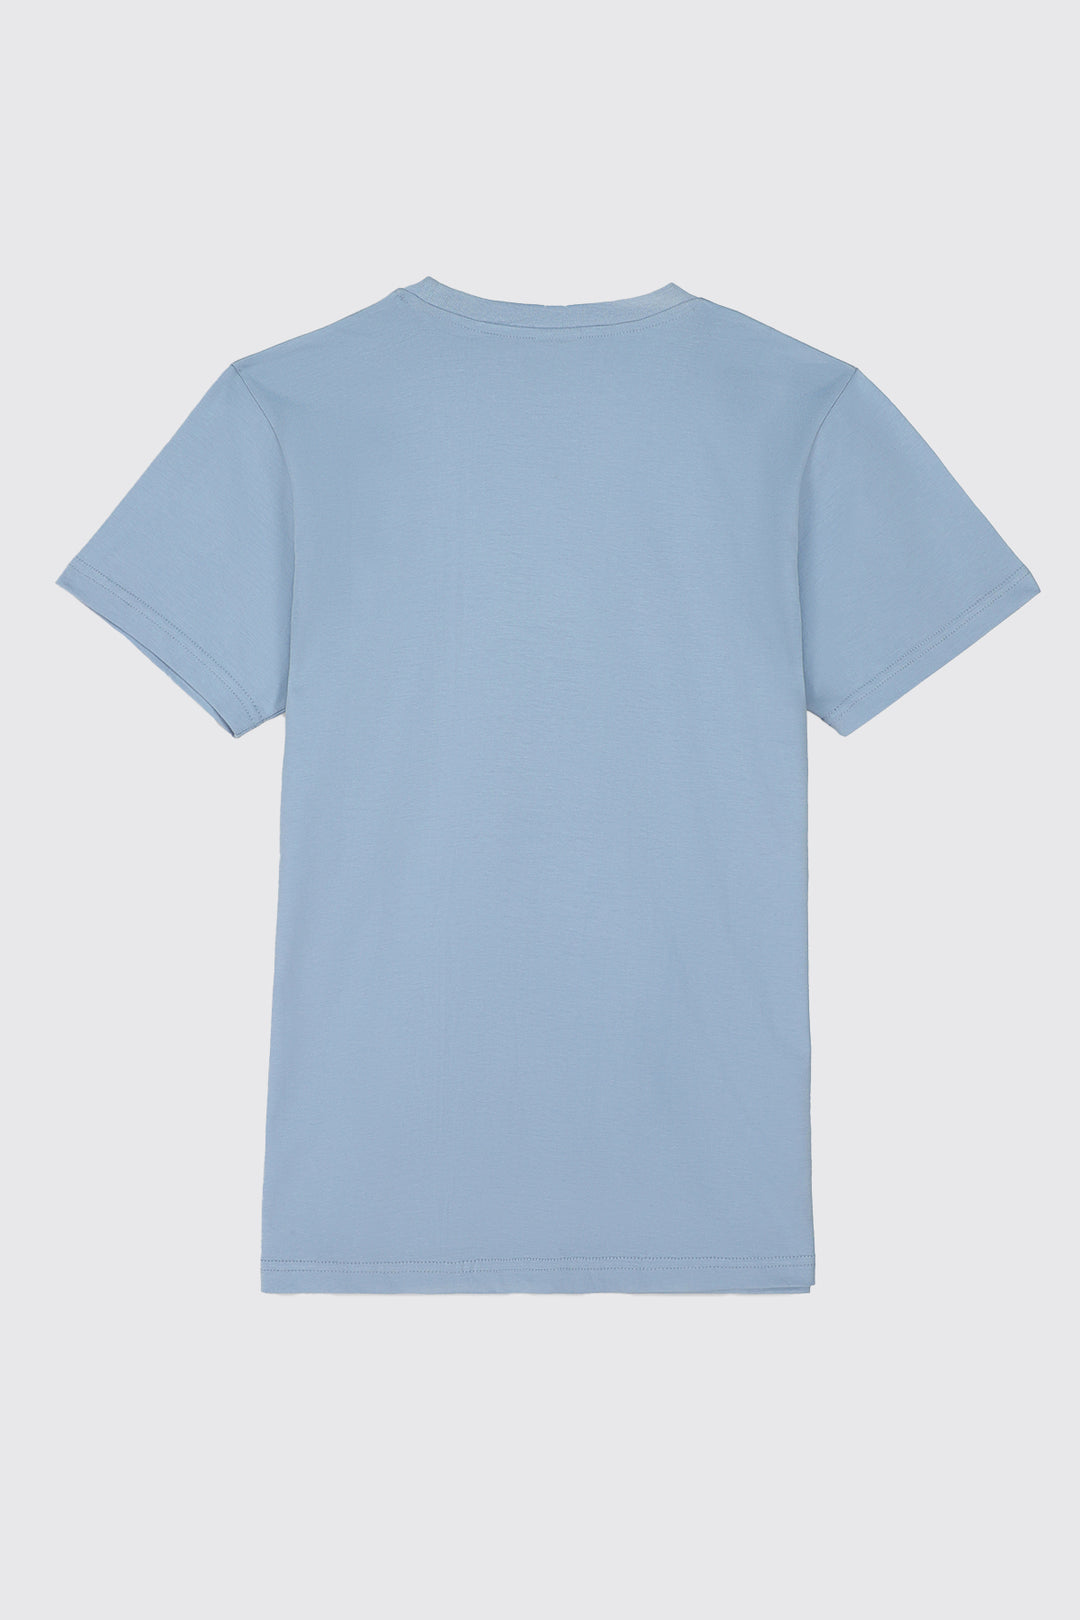 Blue SCLO Statement T-Shirt (Plus Size) - S23 - MT0302P